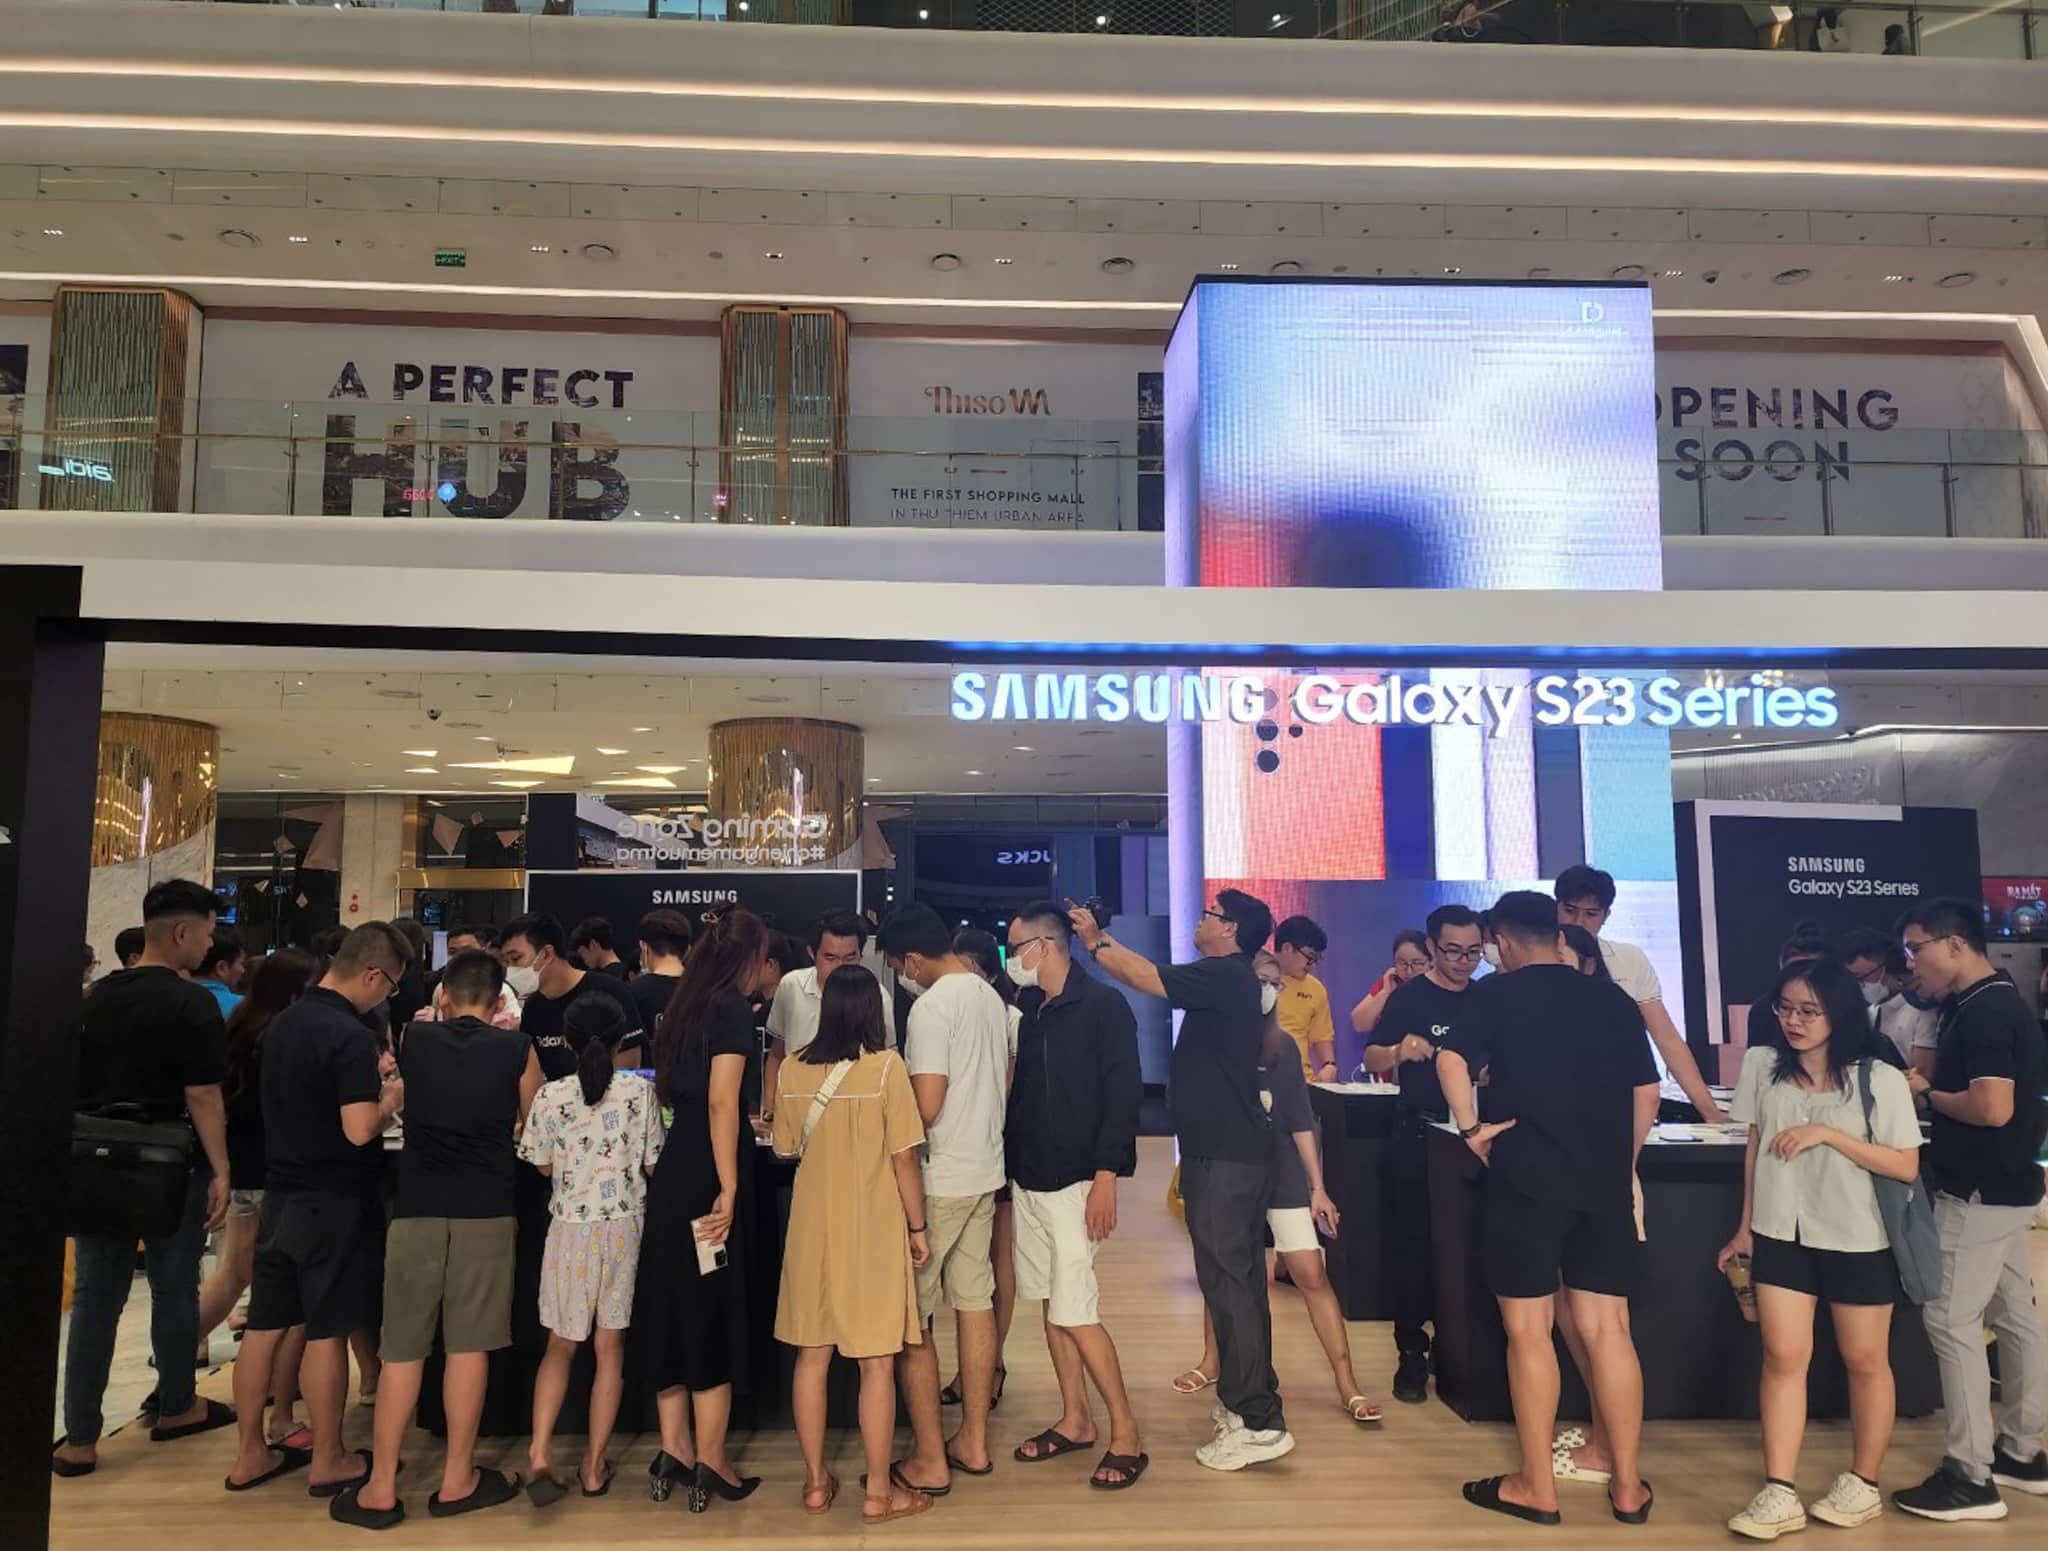 Hoạt động Activation của Samsung đã thu hút đông đảo người tiêu dùng tham gia trải nghiệm